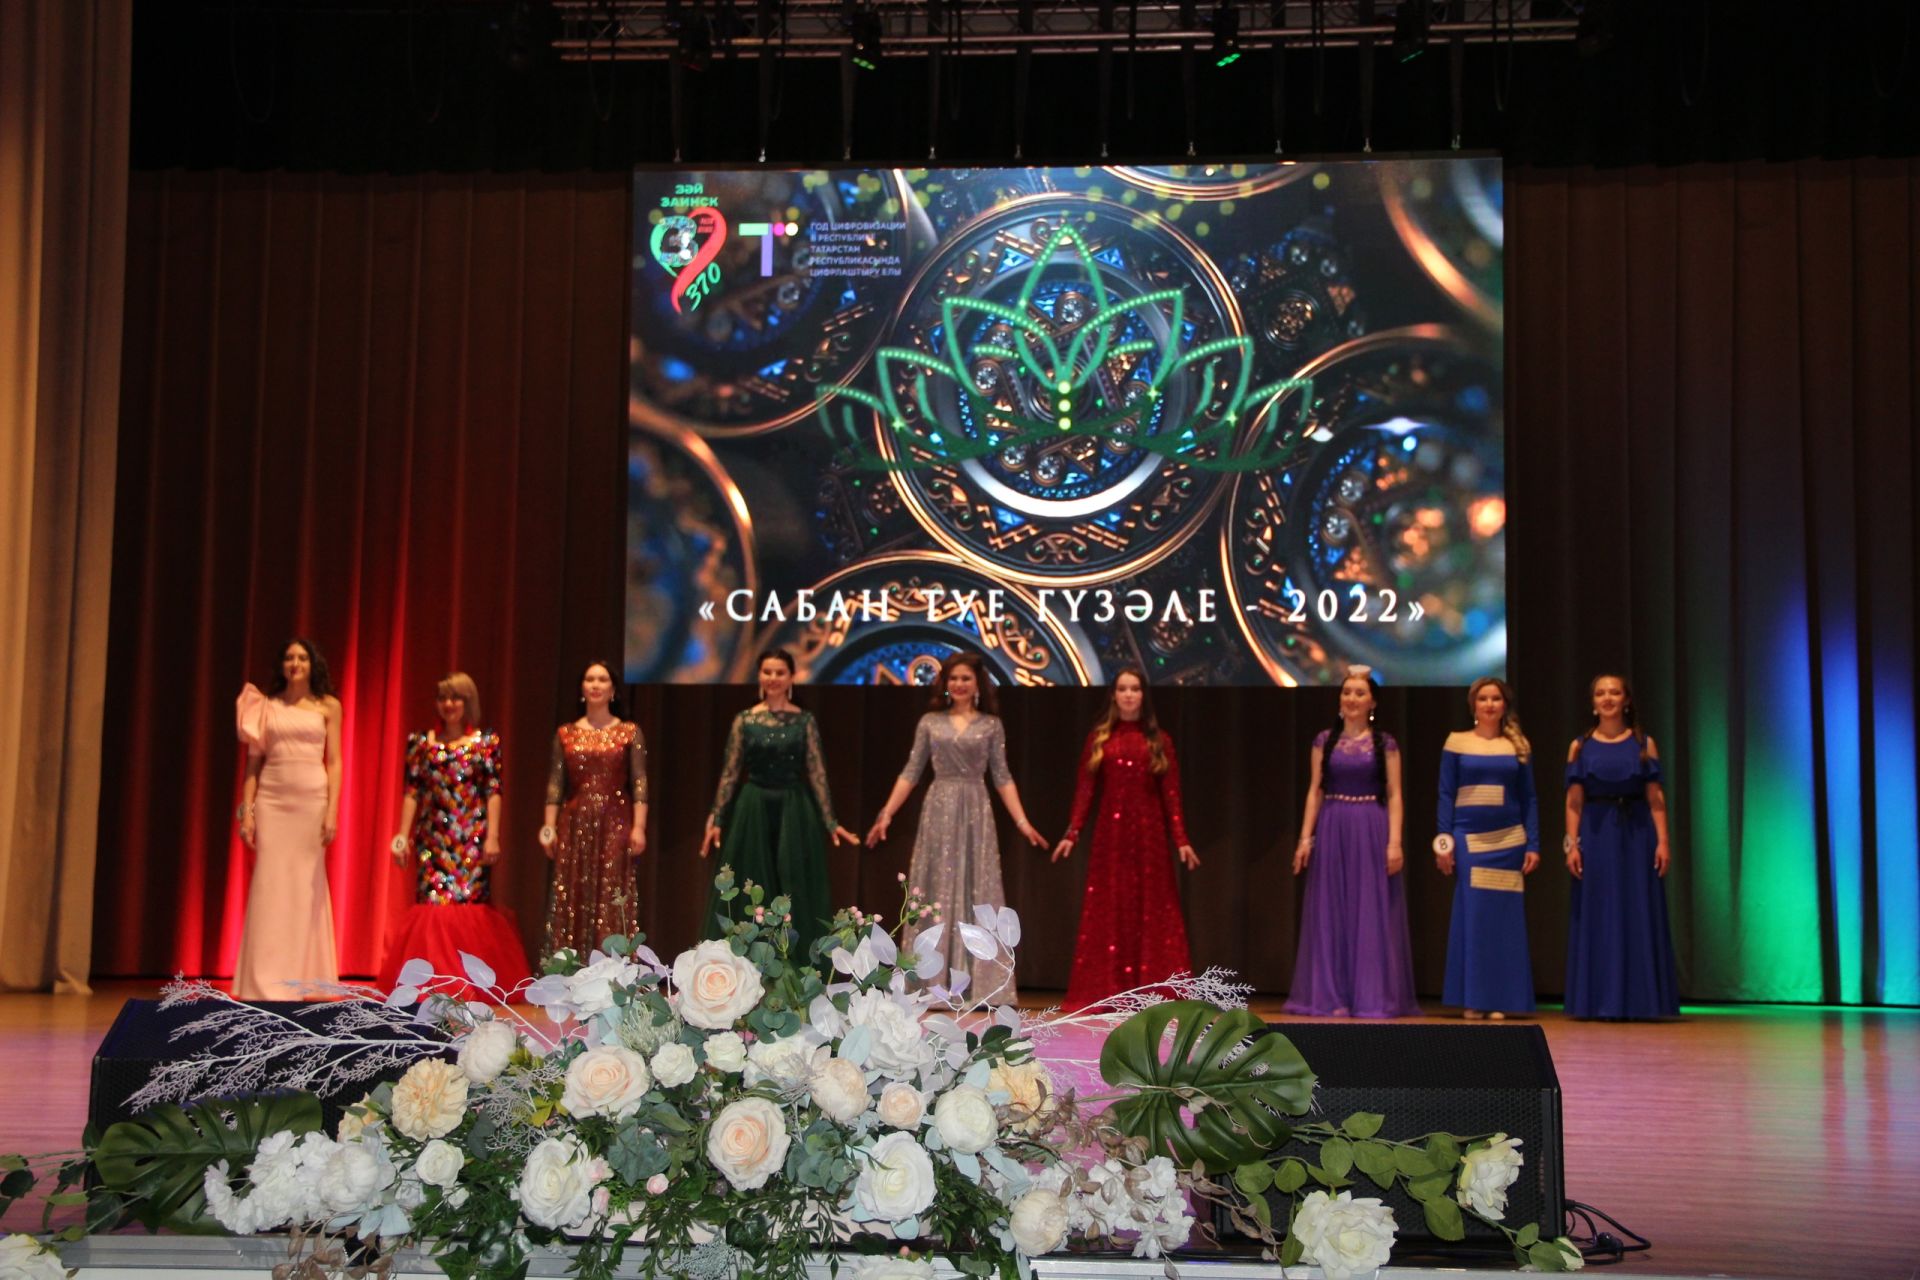 В Заинске состоялся финал конкурса «Сабан туе гузэле-2022»